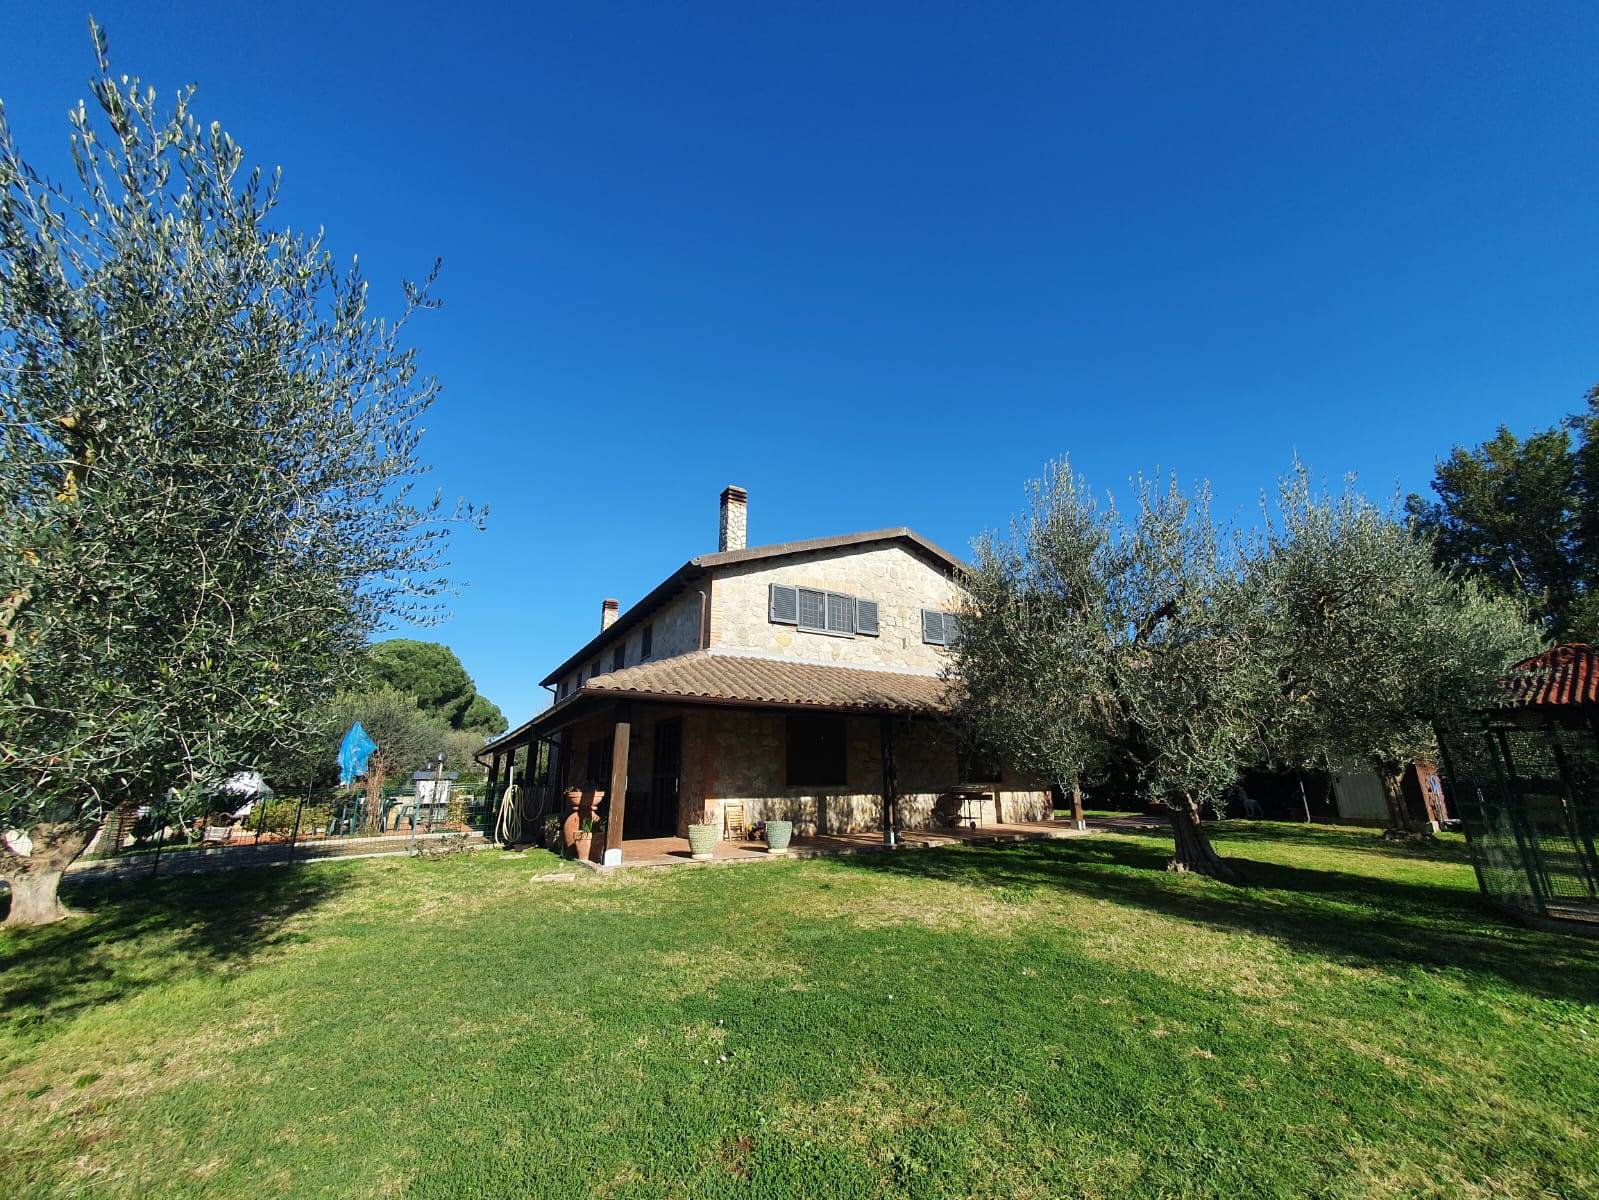 Villa in vendita a Fiano Romano, 5 locali, prezzo € 398.000 | CambioCasa.it